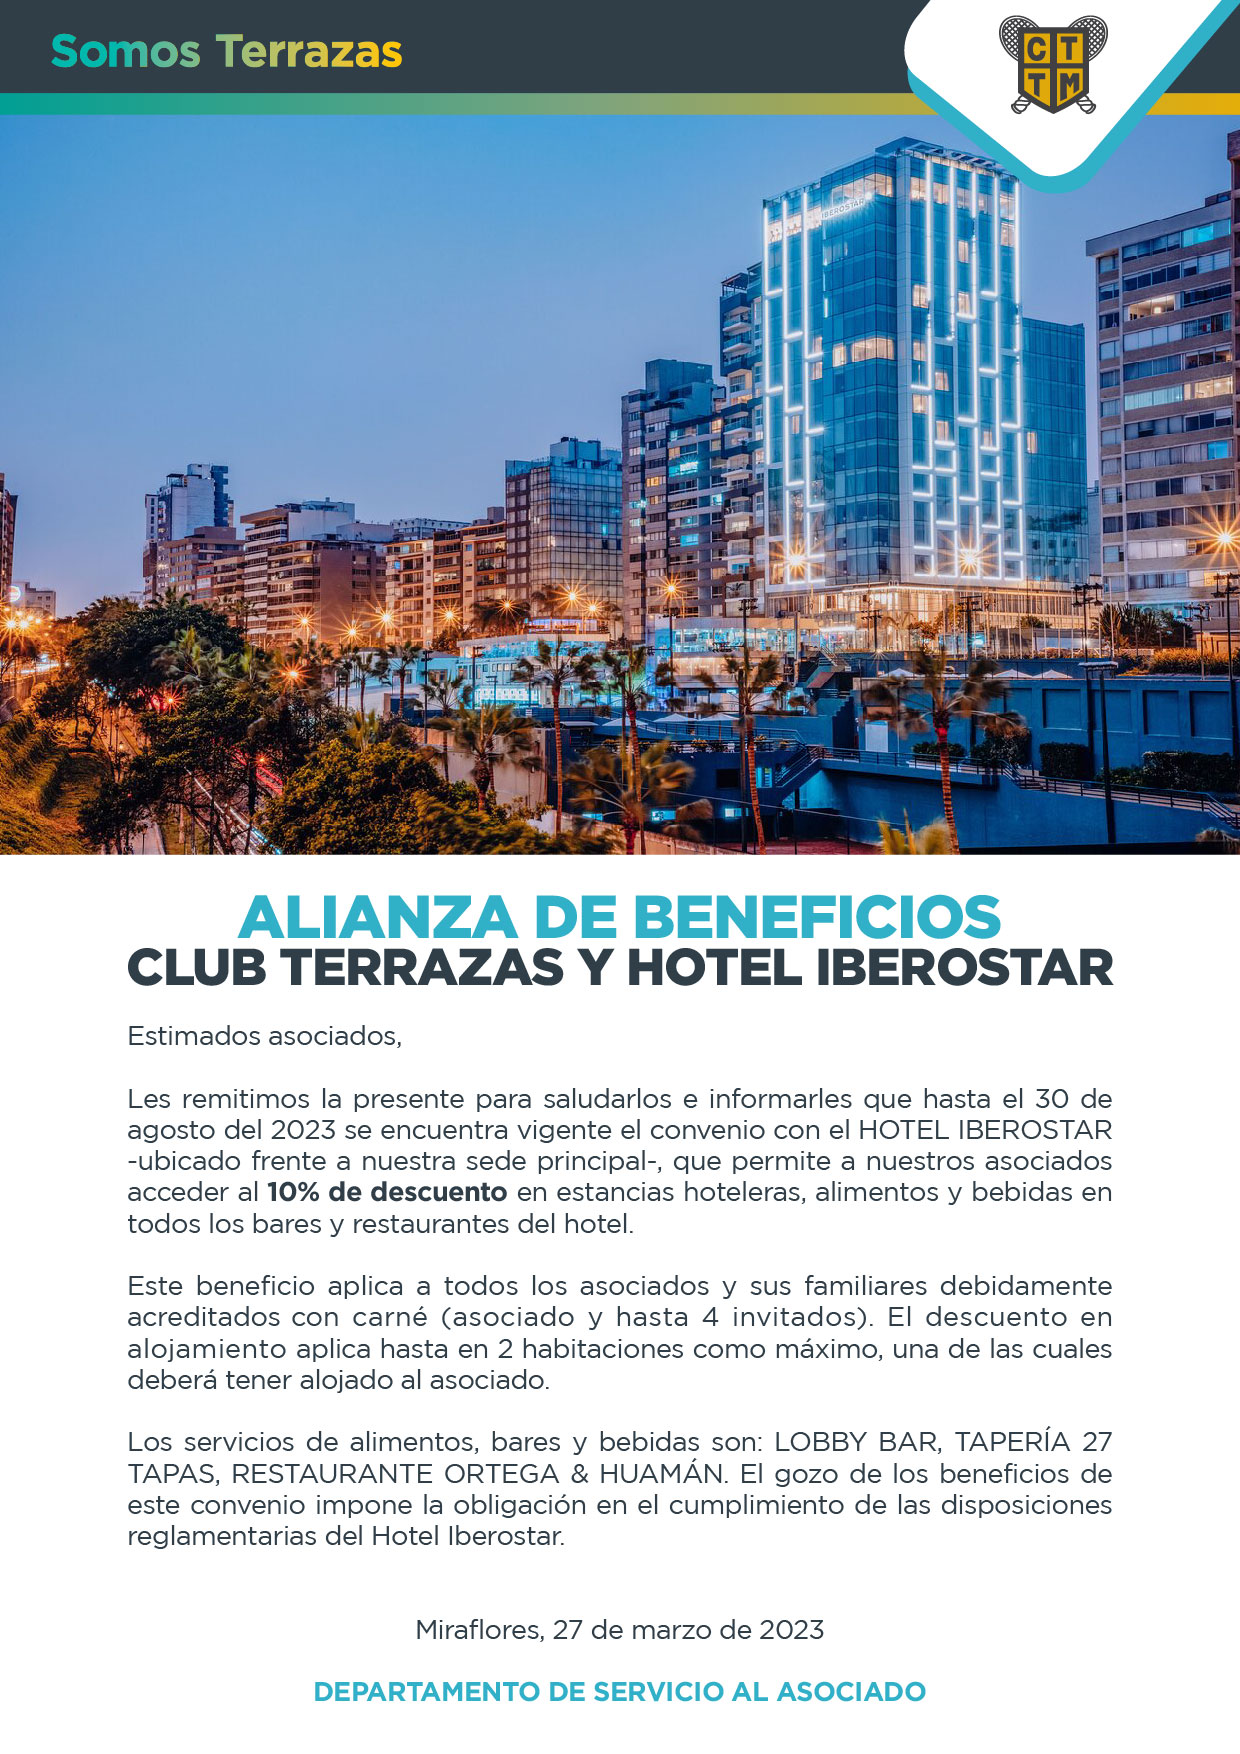 ALIANZA DE BENEFICIOS: CLUB TERRAZAS Y HOTEL IBEROSTAR